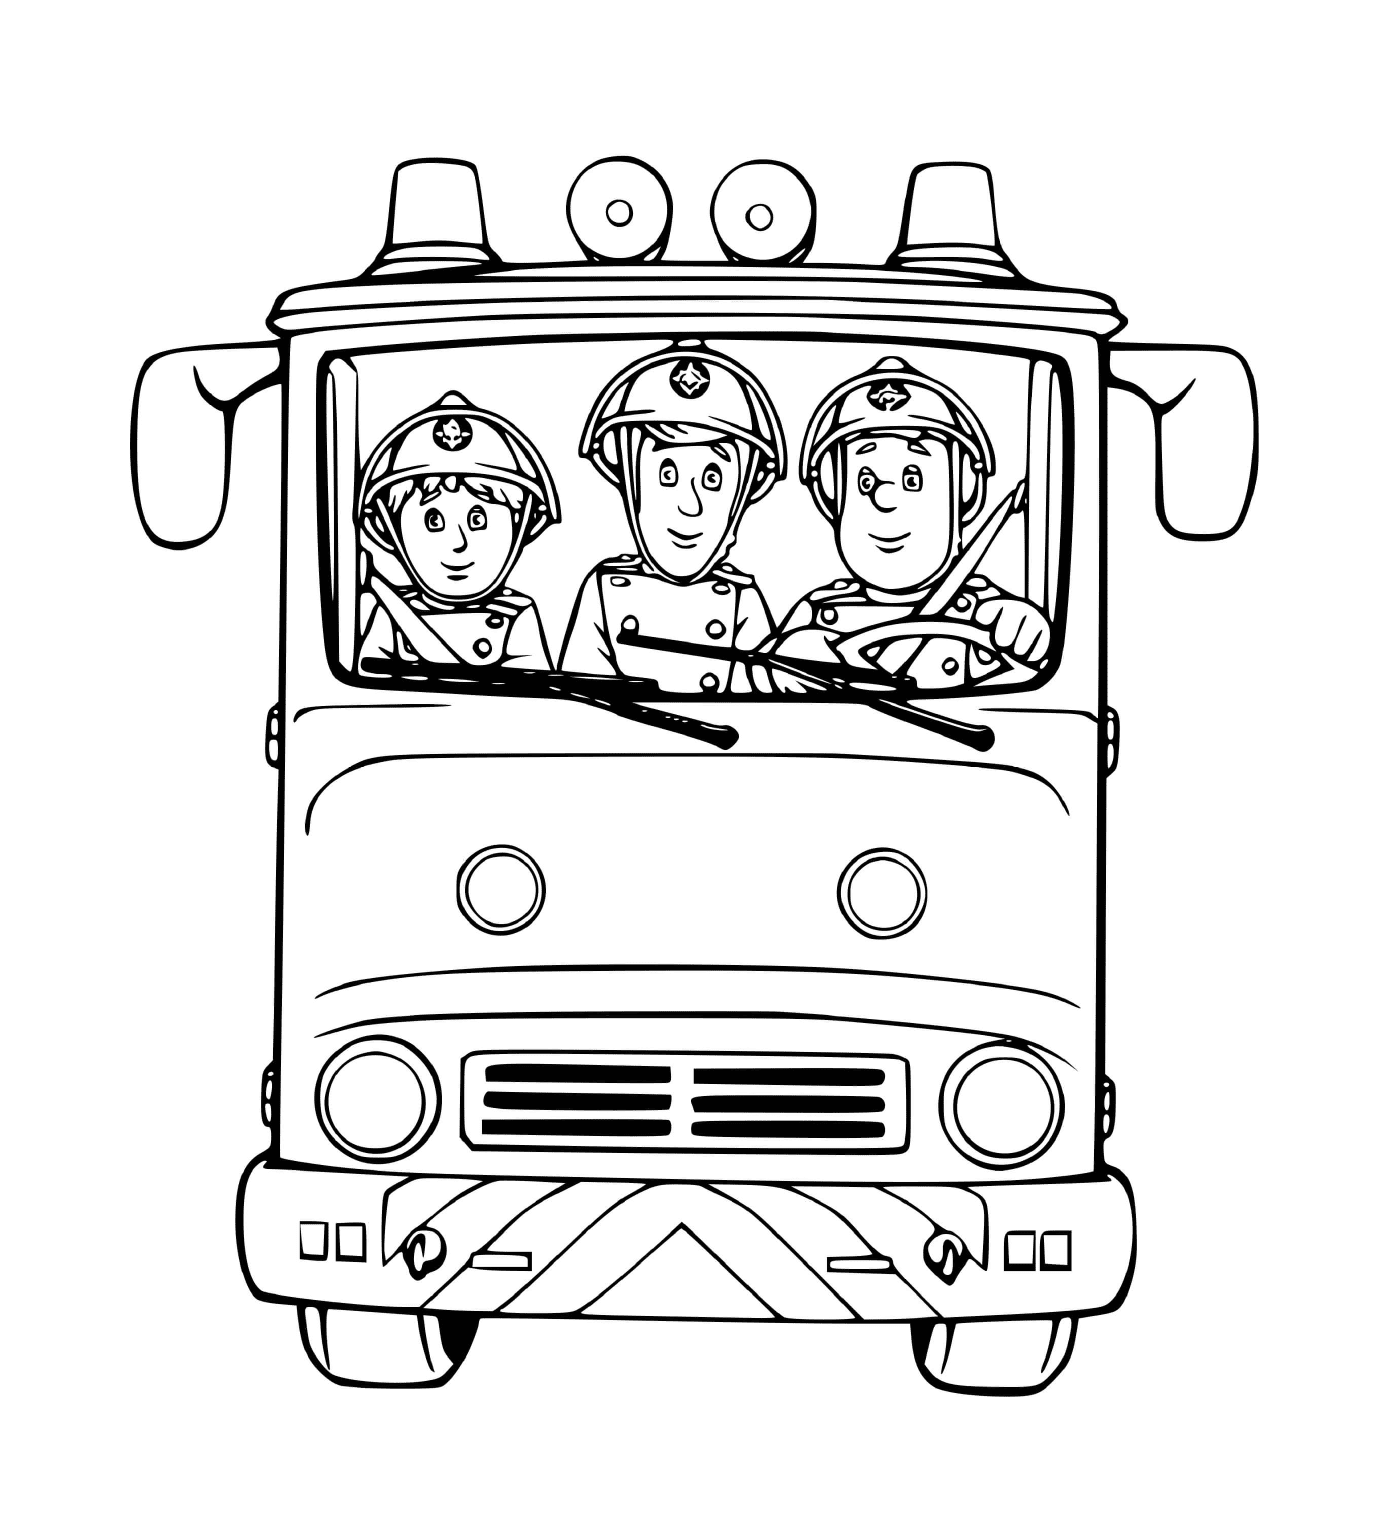   Trois pompiers dans un camion prêts à agir 